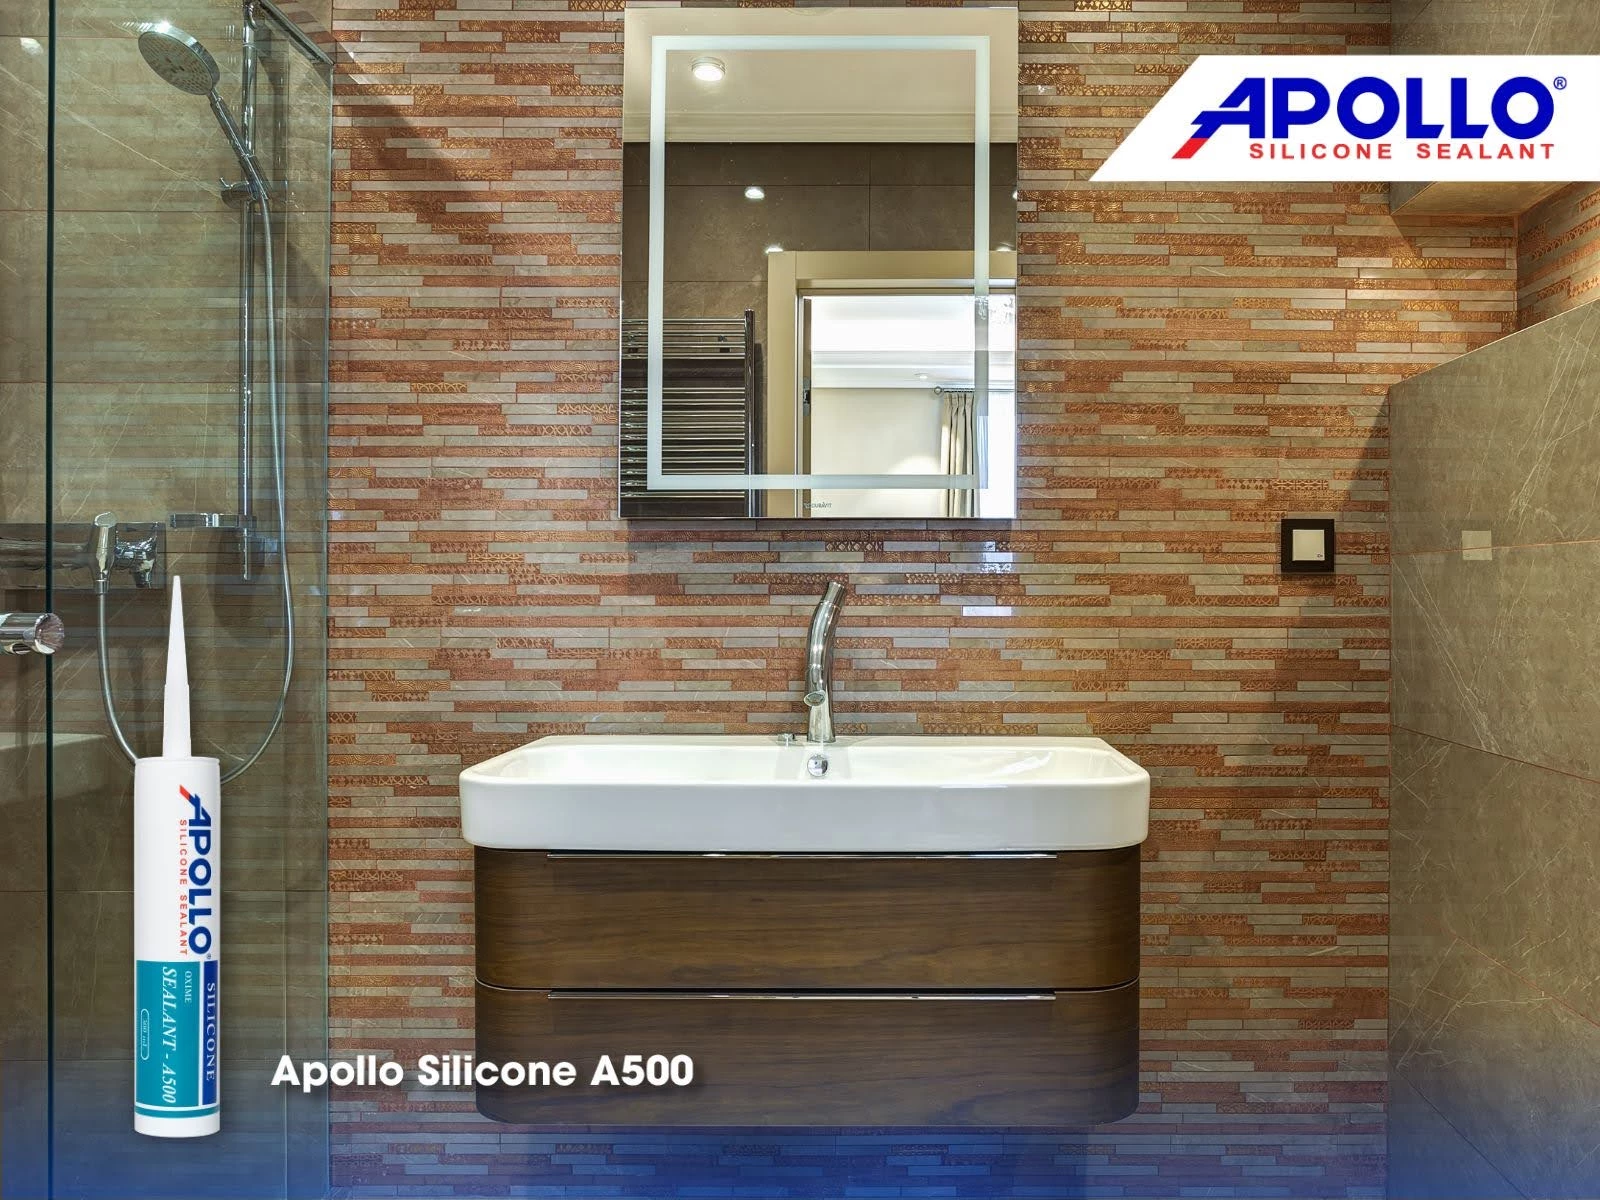 Apollo A500 có thể sử dụng cho nhiều các bề mặt khác nhau như gỗ, gạch, nhựa, kim loại, gương...